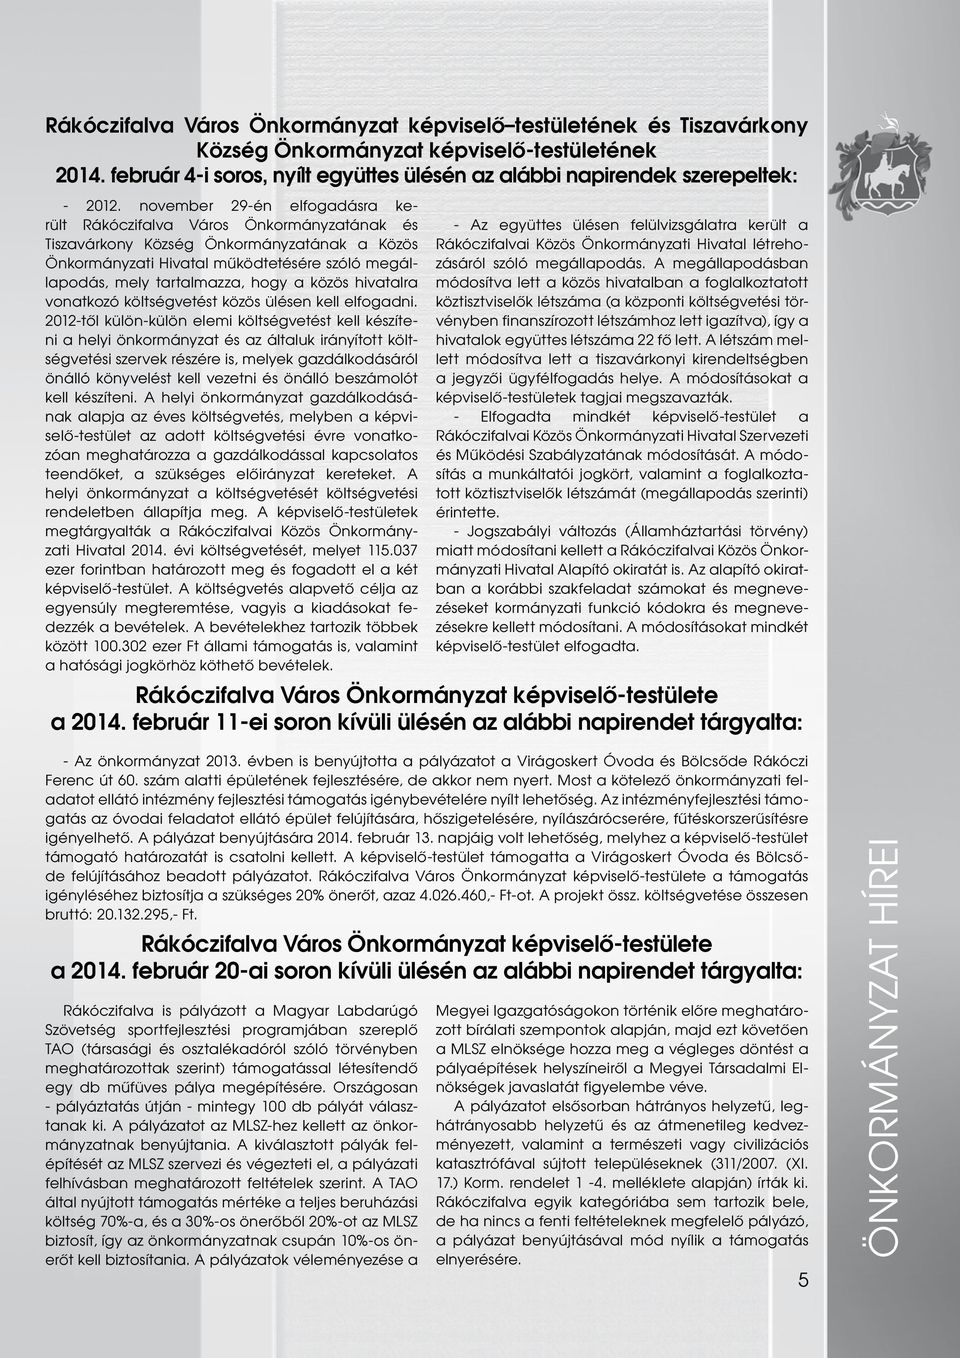 november 29-én elfogadásra került Rákóczifalva Város Önkormányzatának és Tiszavárkony Község Önkormányzatának a Közös Önkormányzati Hivatal működtetésére szóló megállapodás, mely tartalmazza, hogy a